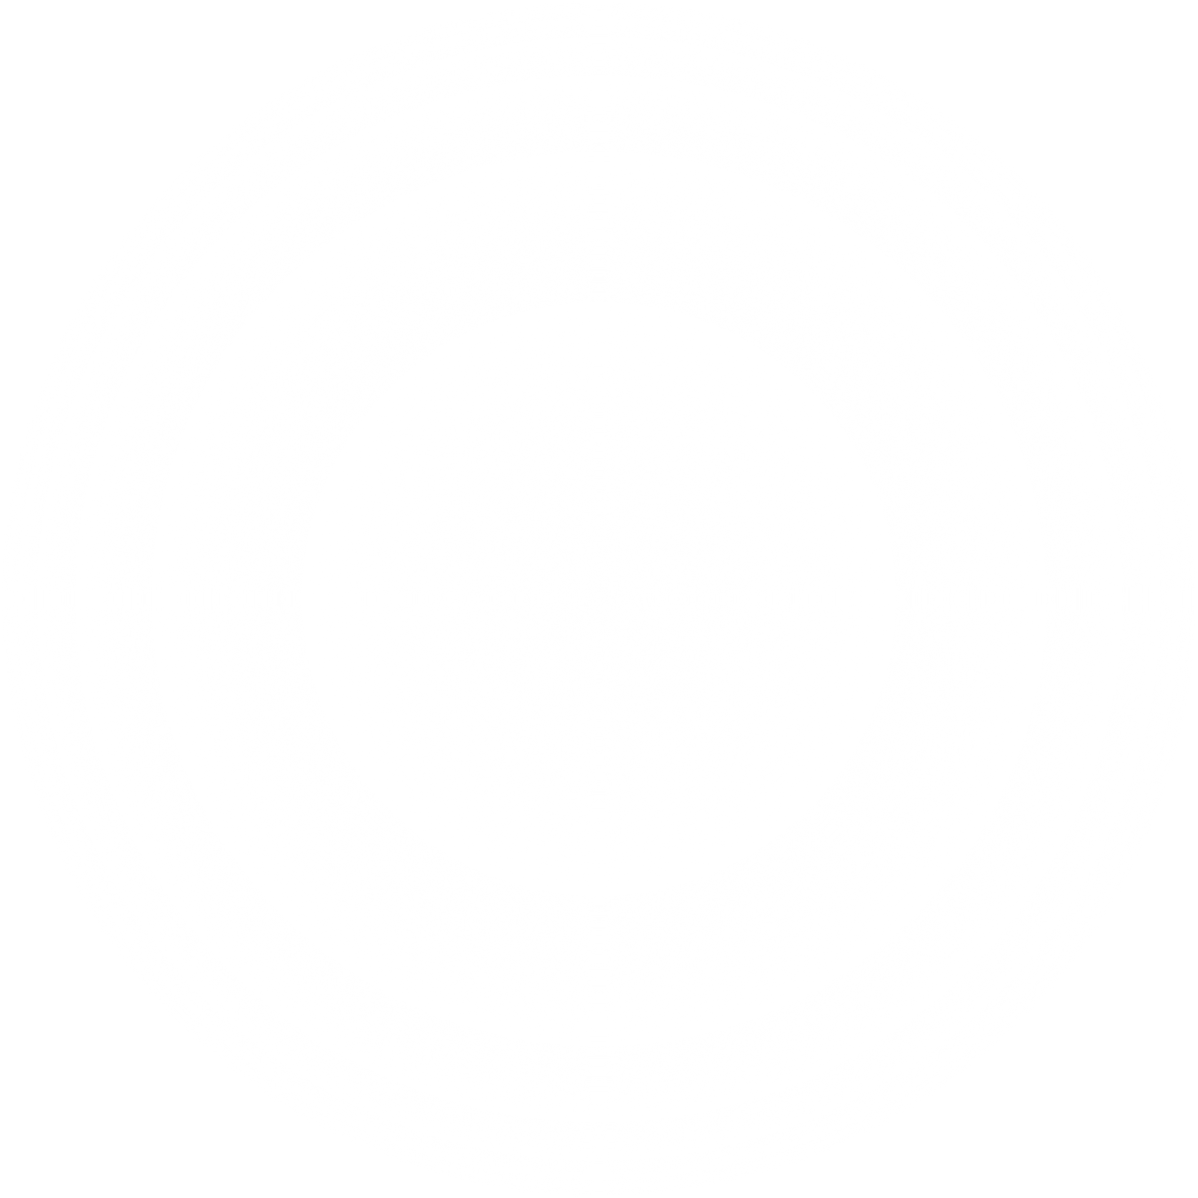 White blur circle. Neon round frame. Shining circle banner.